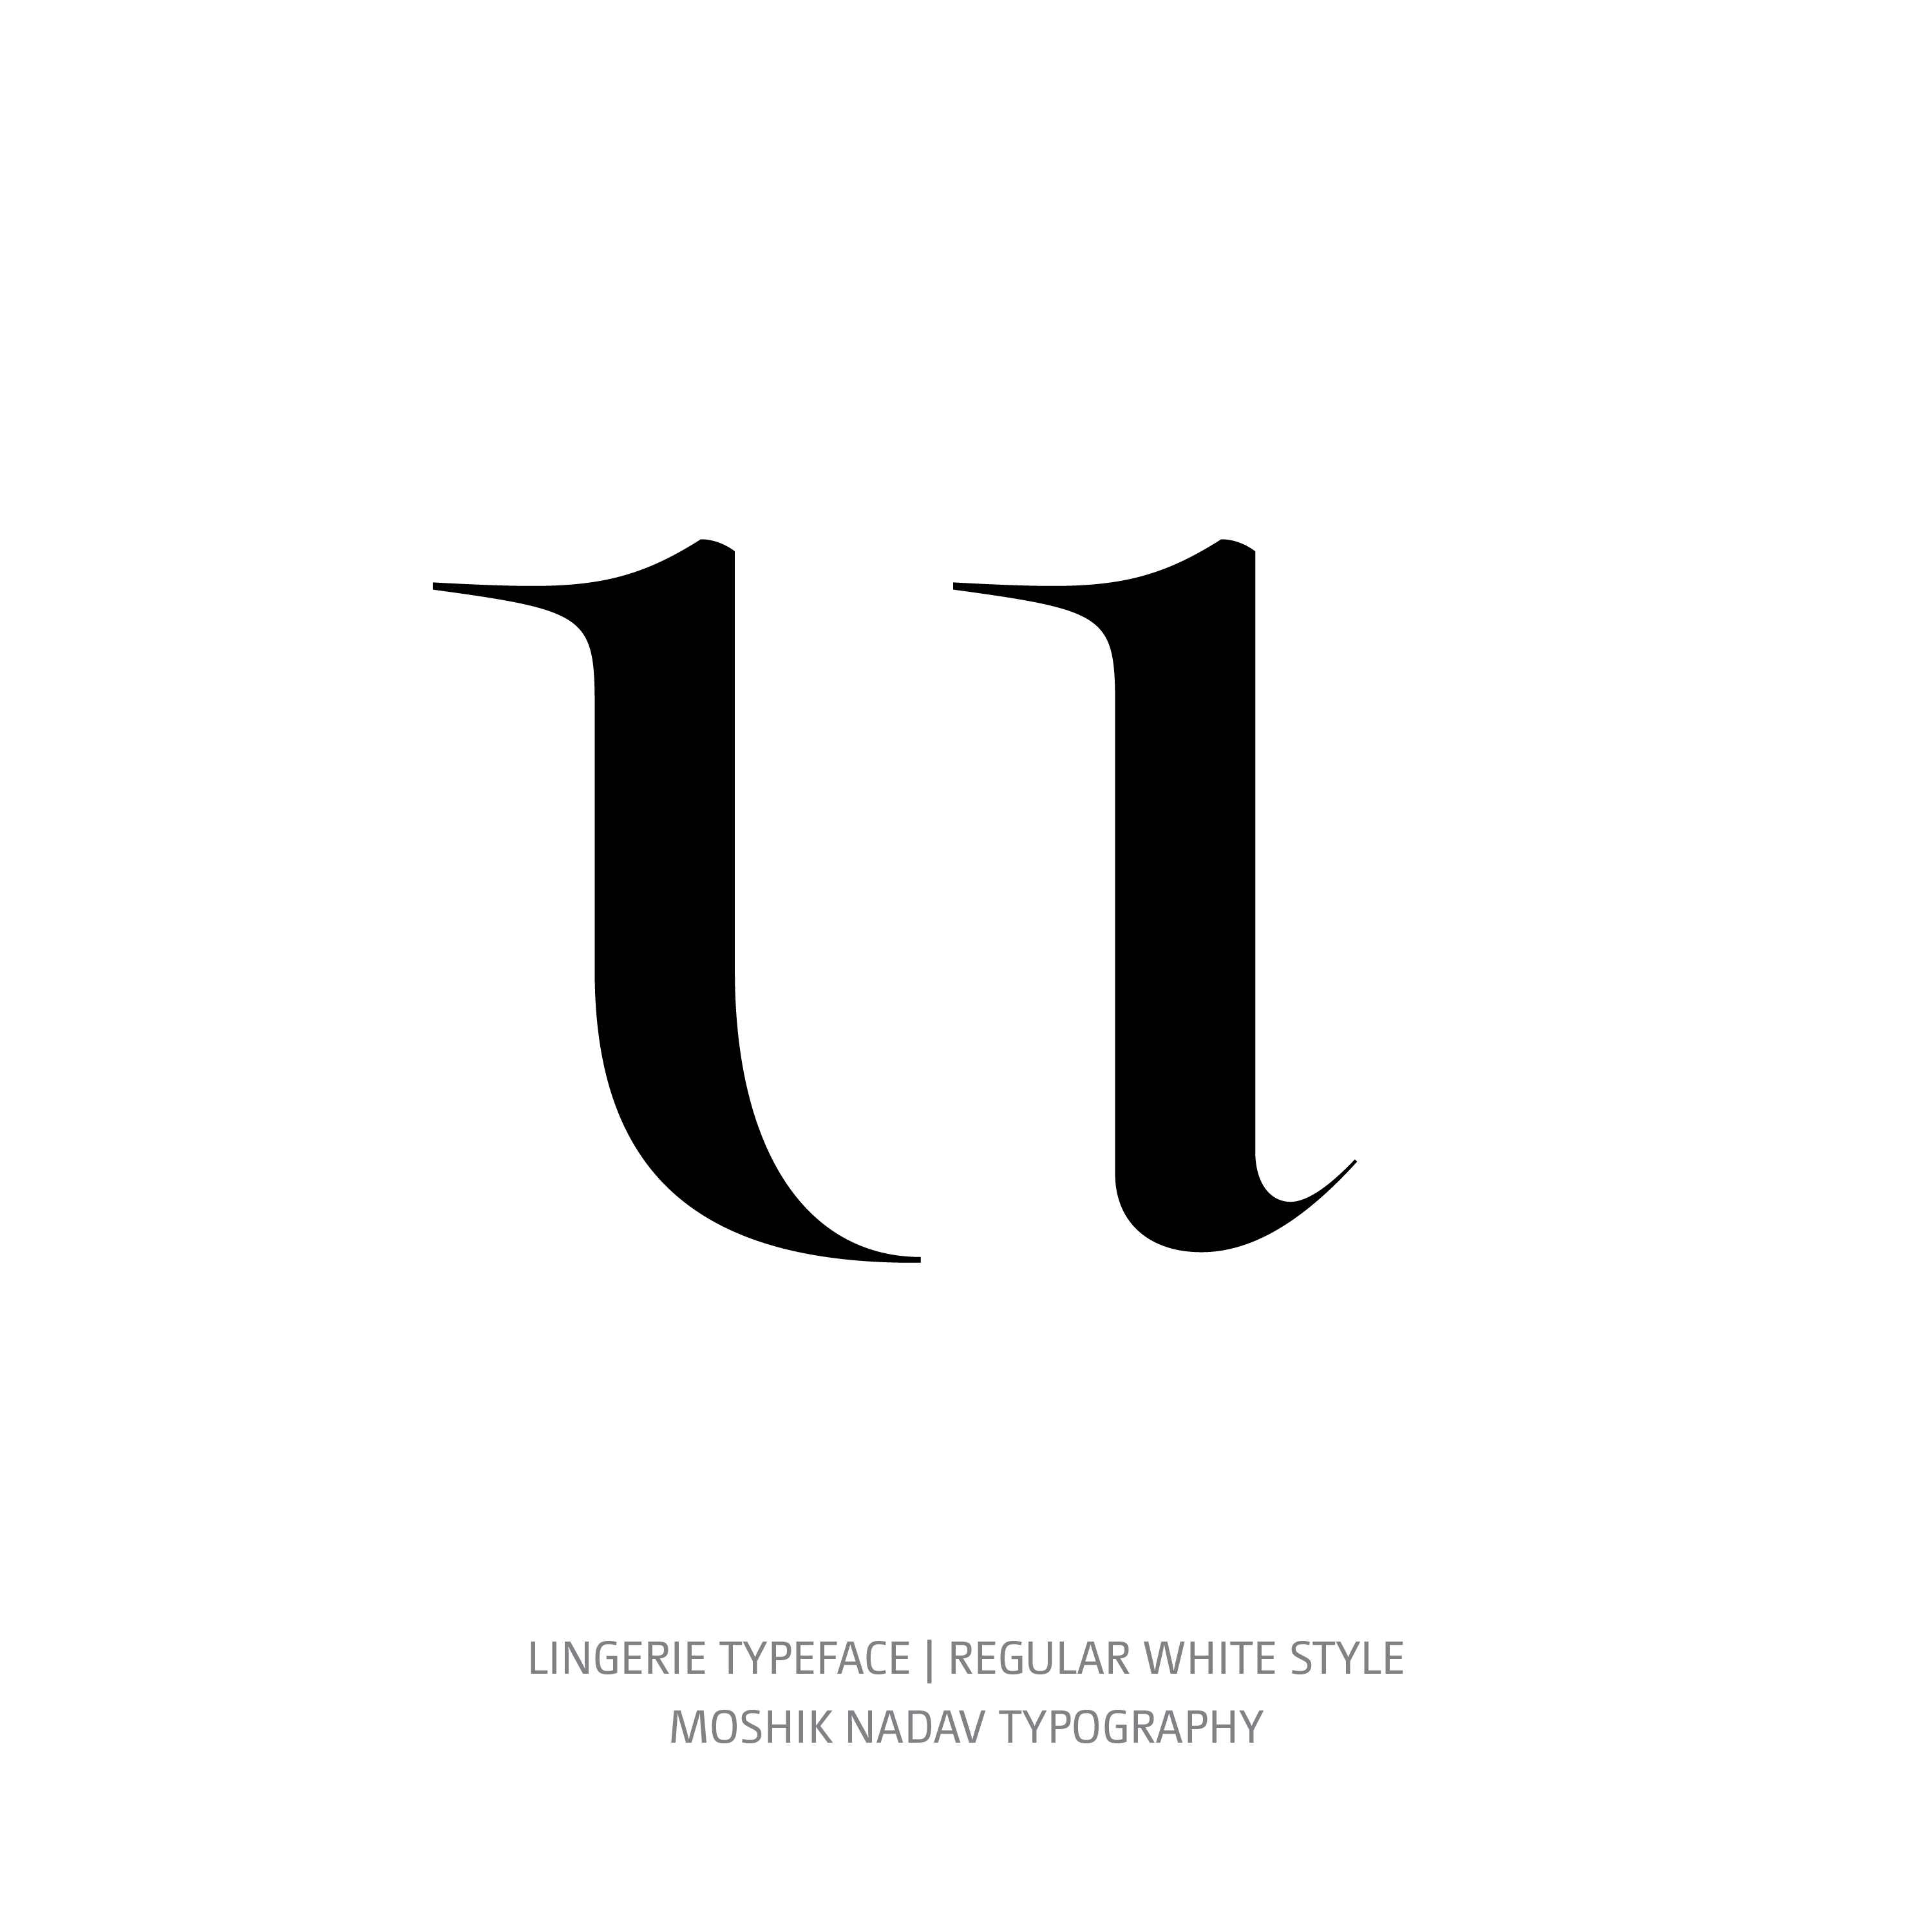 Lingerie Typeface Regular White u